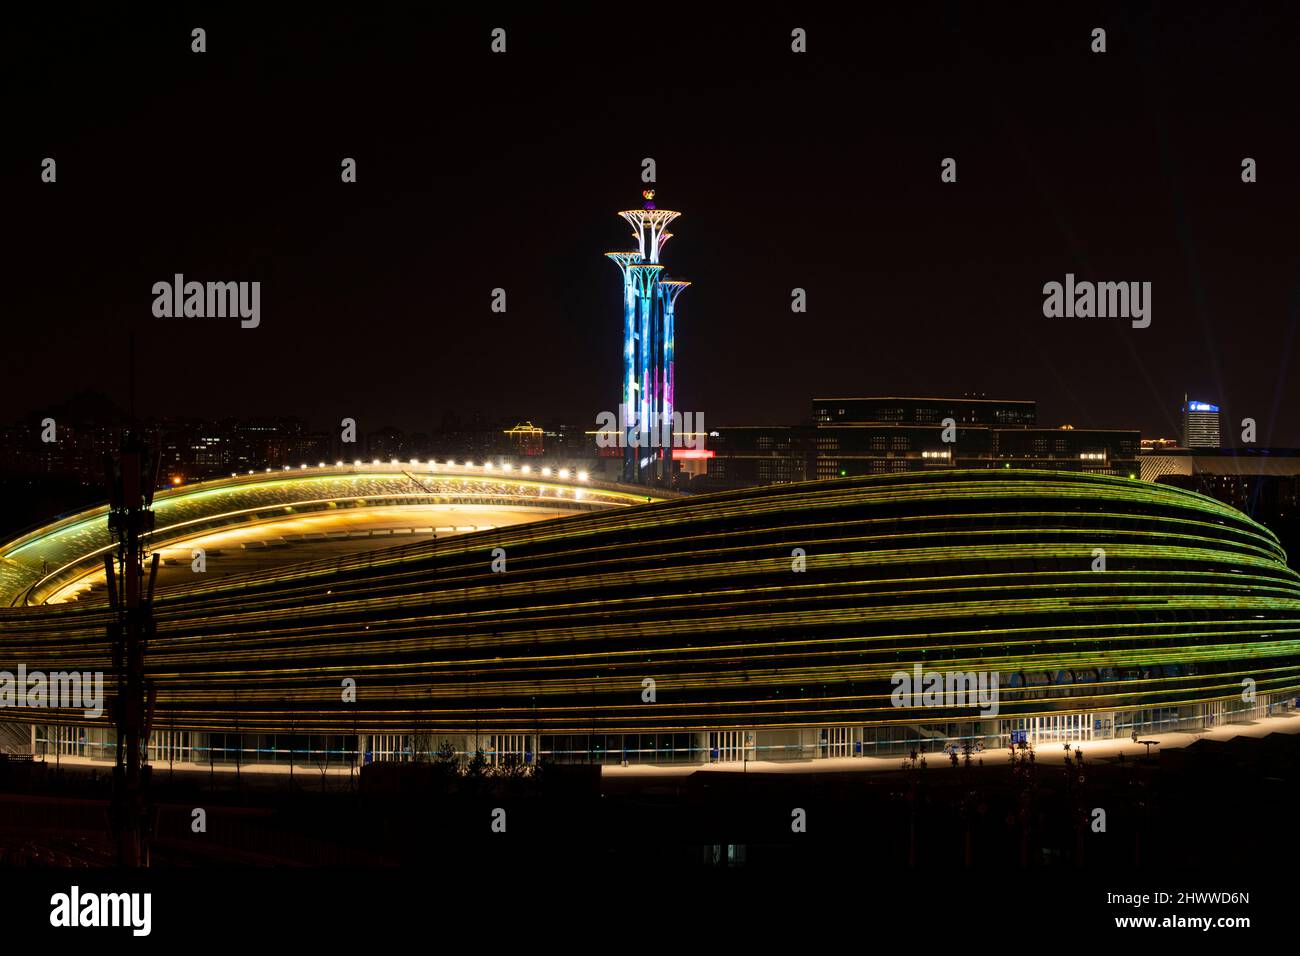 BEIJING, CHINE - 7 MARS 2022 - le Centre national de patinage de vitesse (ruban de glace) brille avec la Tour olympique lors d'un spectacle de lumière la nuit à Beijing, Banque D'Images